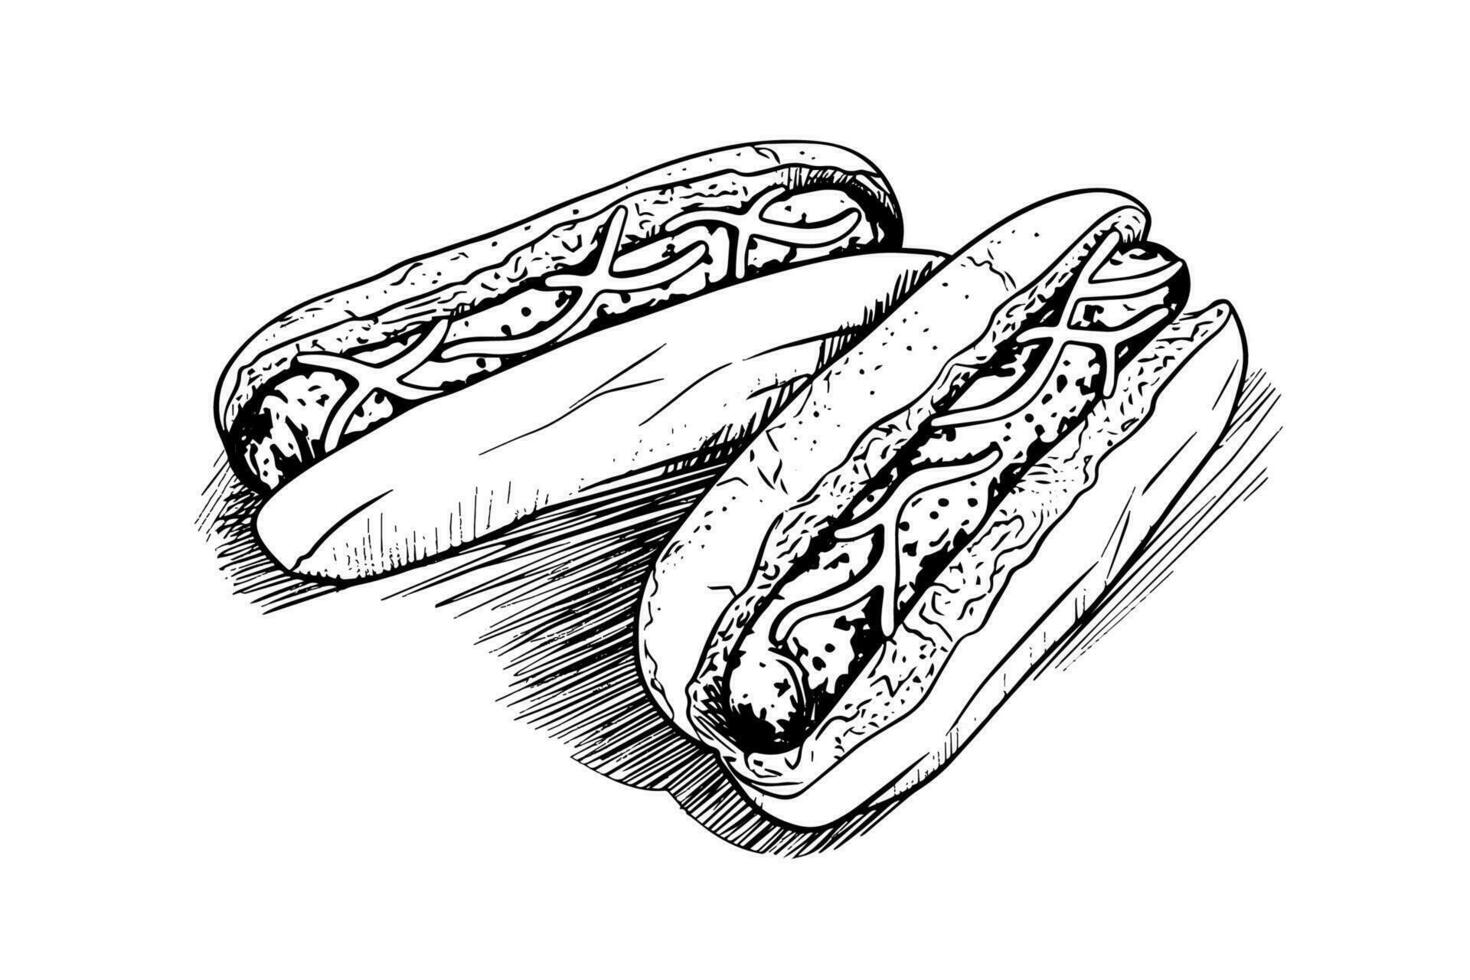 dos caliente perro con salchicha y salsa grabado bosquejo vector ilustración.